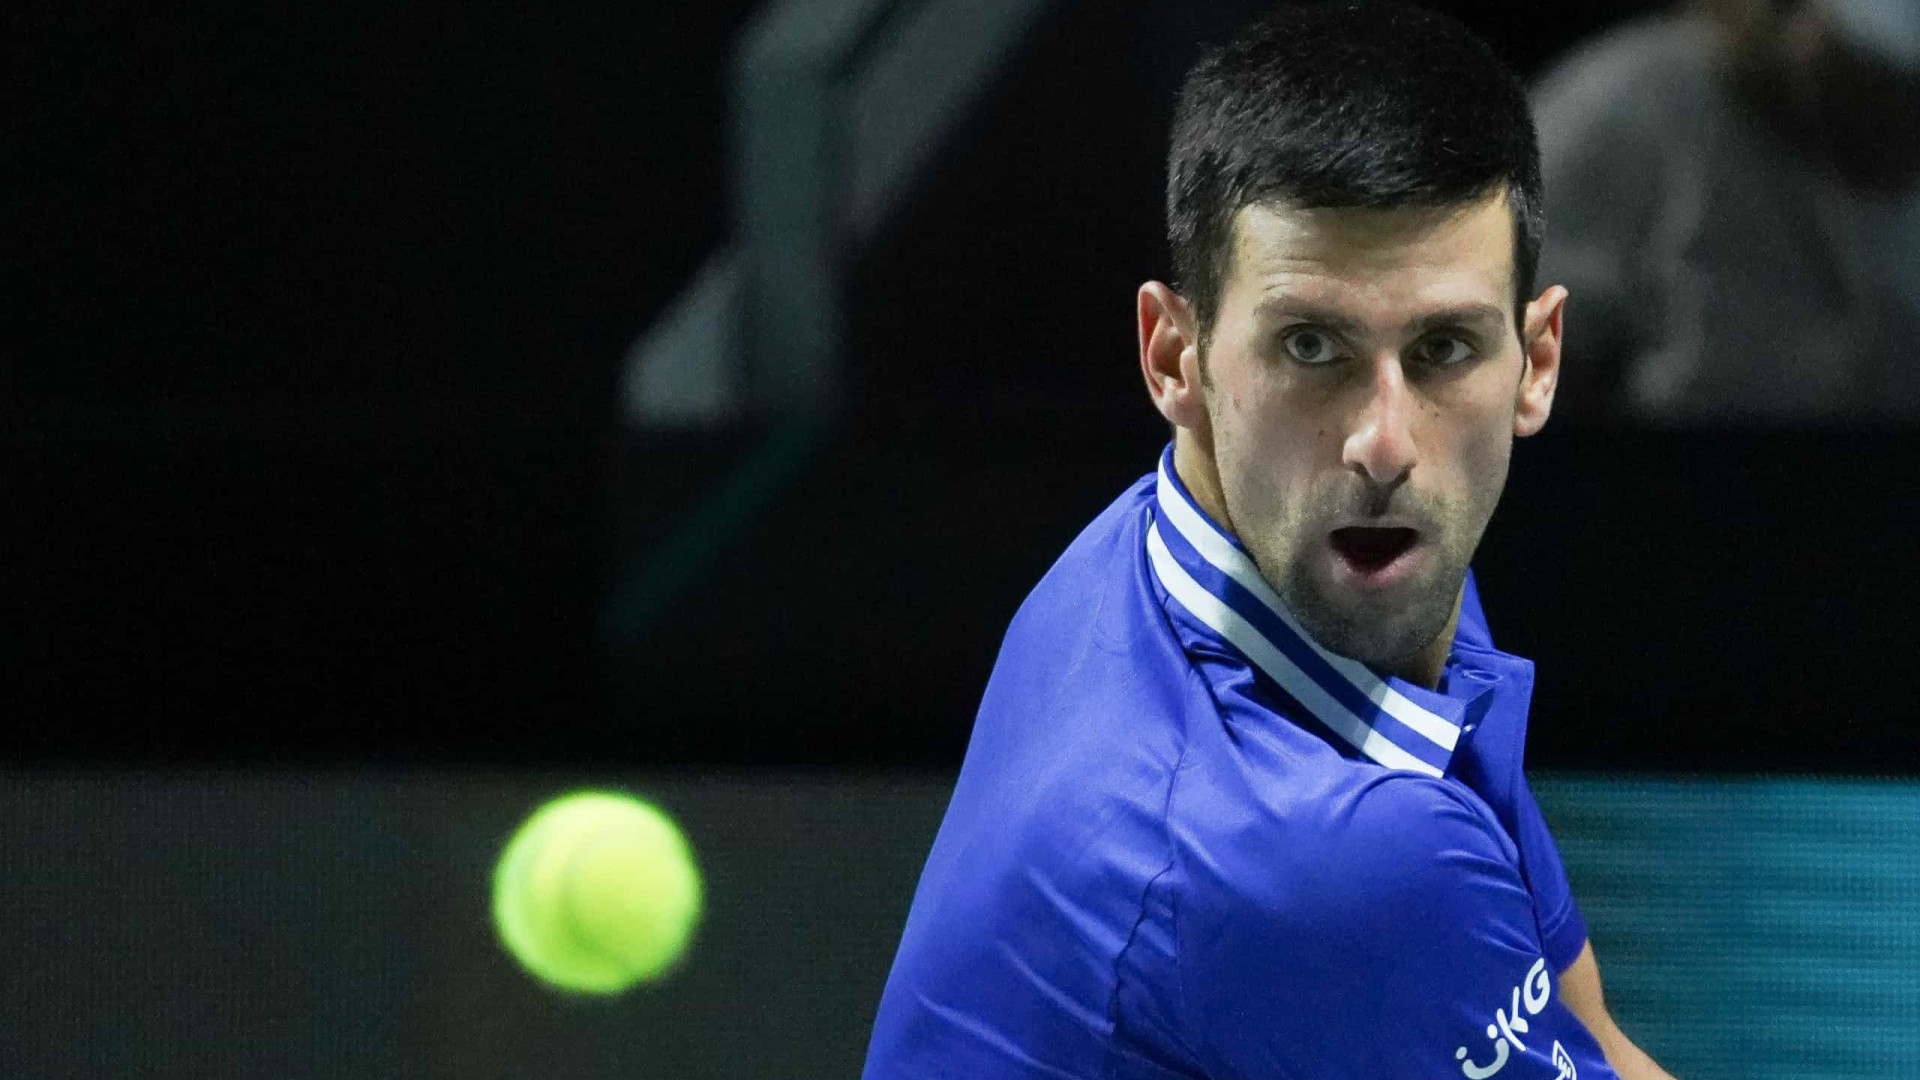 Austrália cancela visto de Djokovic pela 2ª vez e tenista pode ser deportado